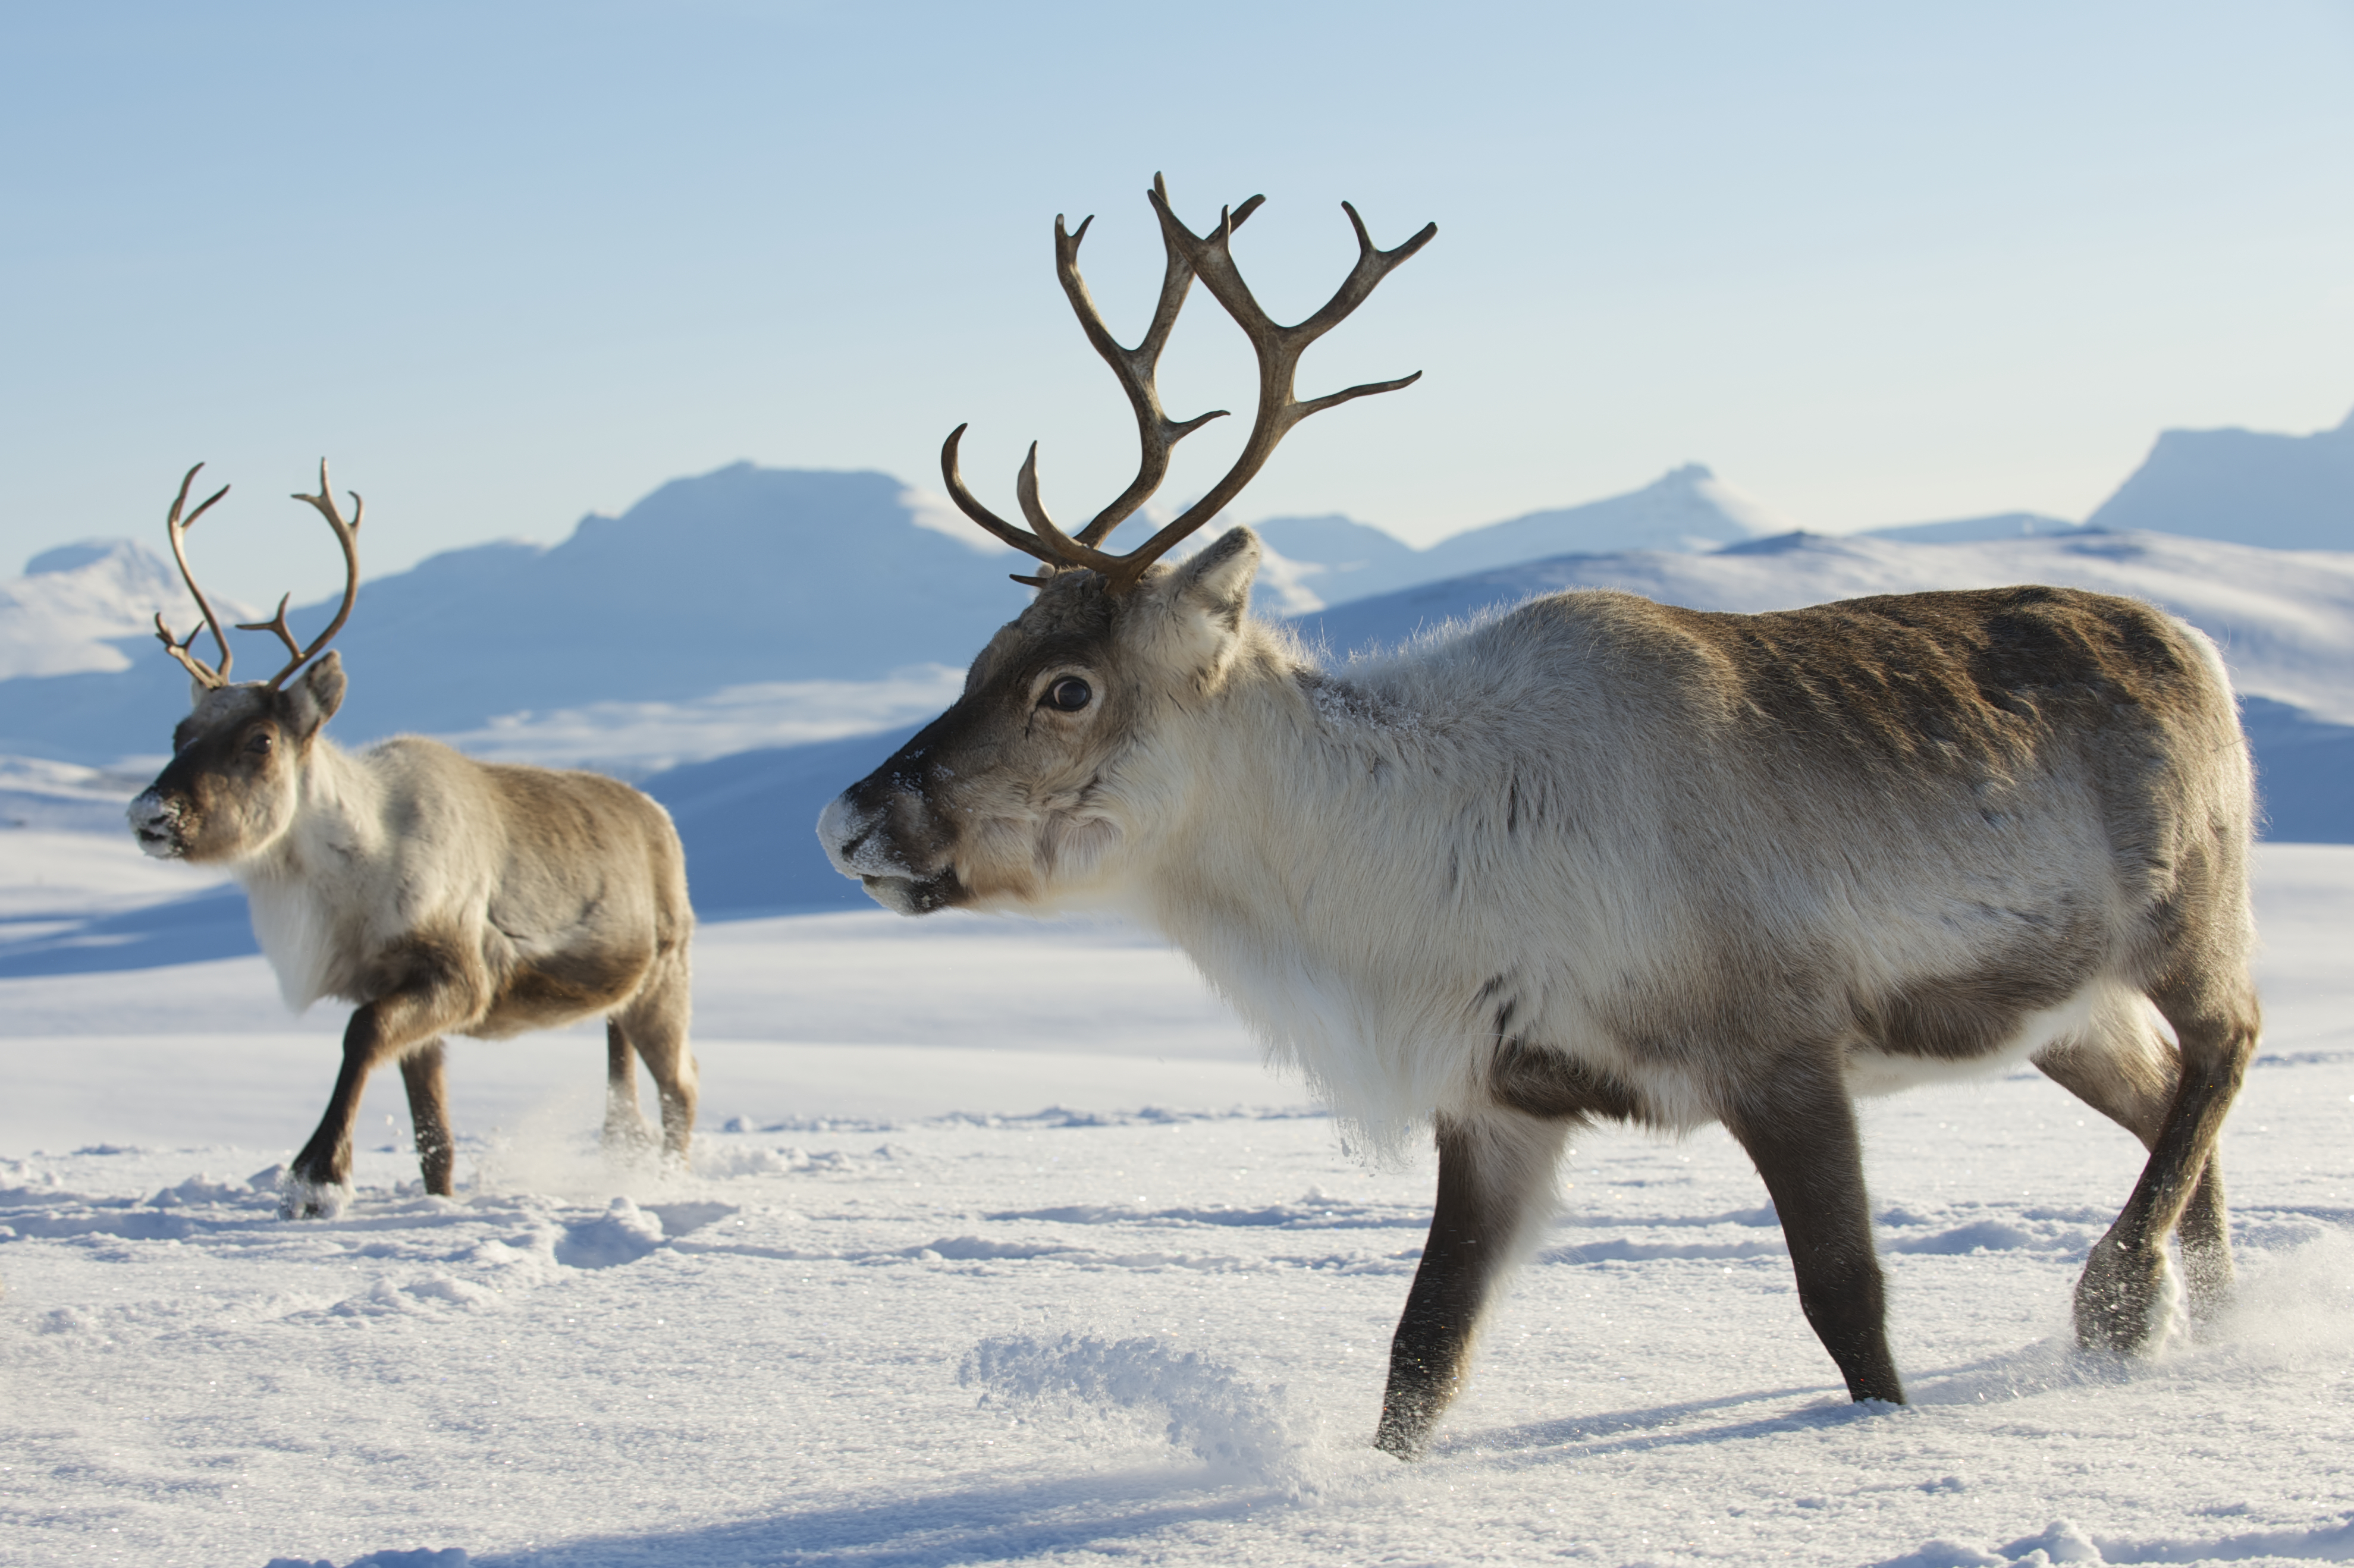 Remarkable Reindeer – The Free Weekly